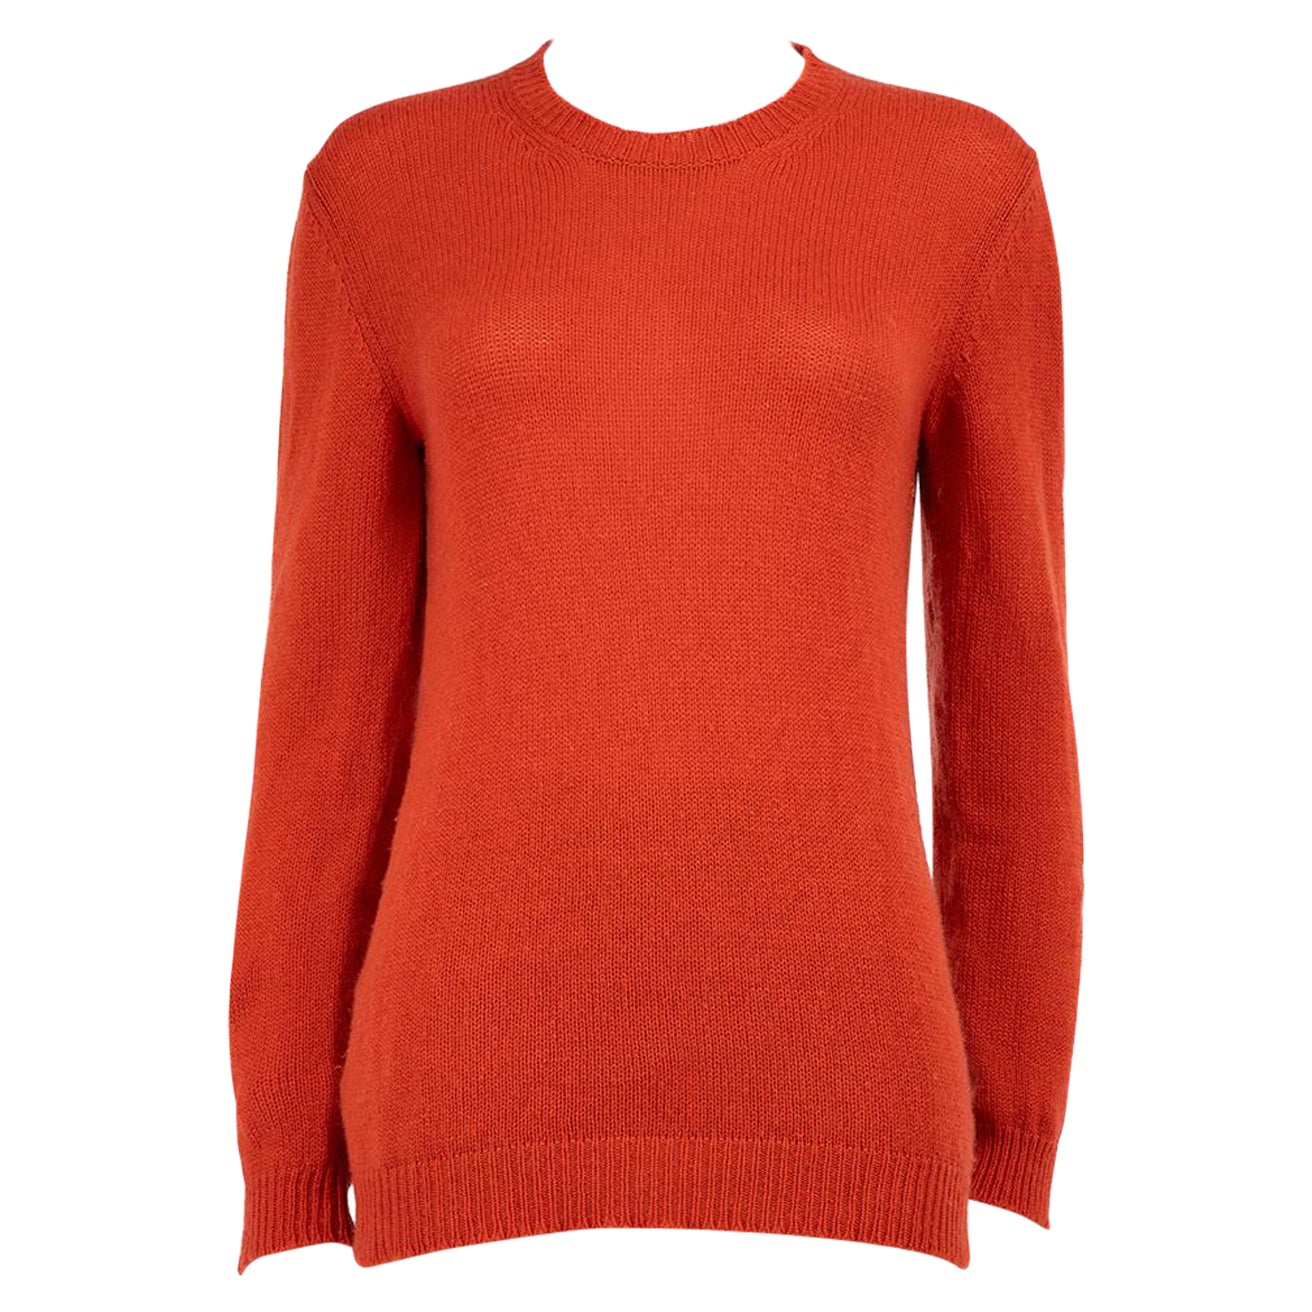 Marni Orange Cashmere Knit Ombré Shoulder Jumper Size L For Sale